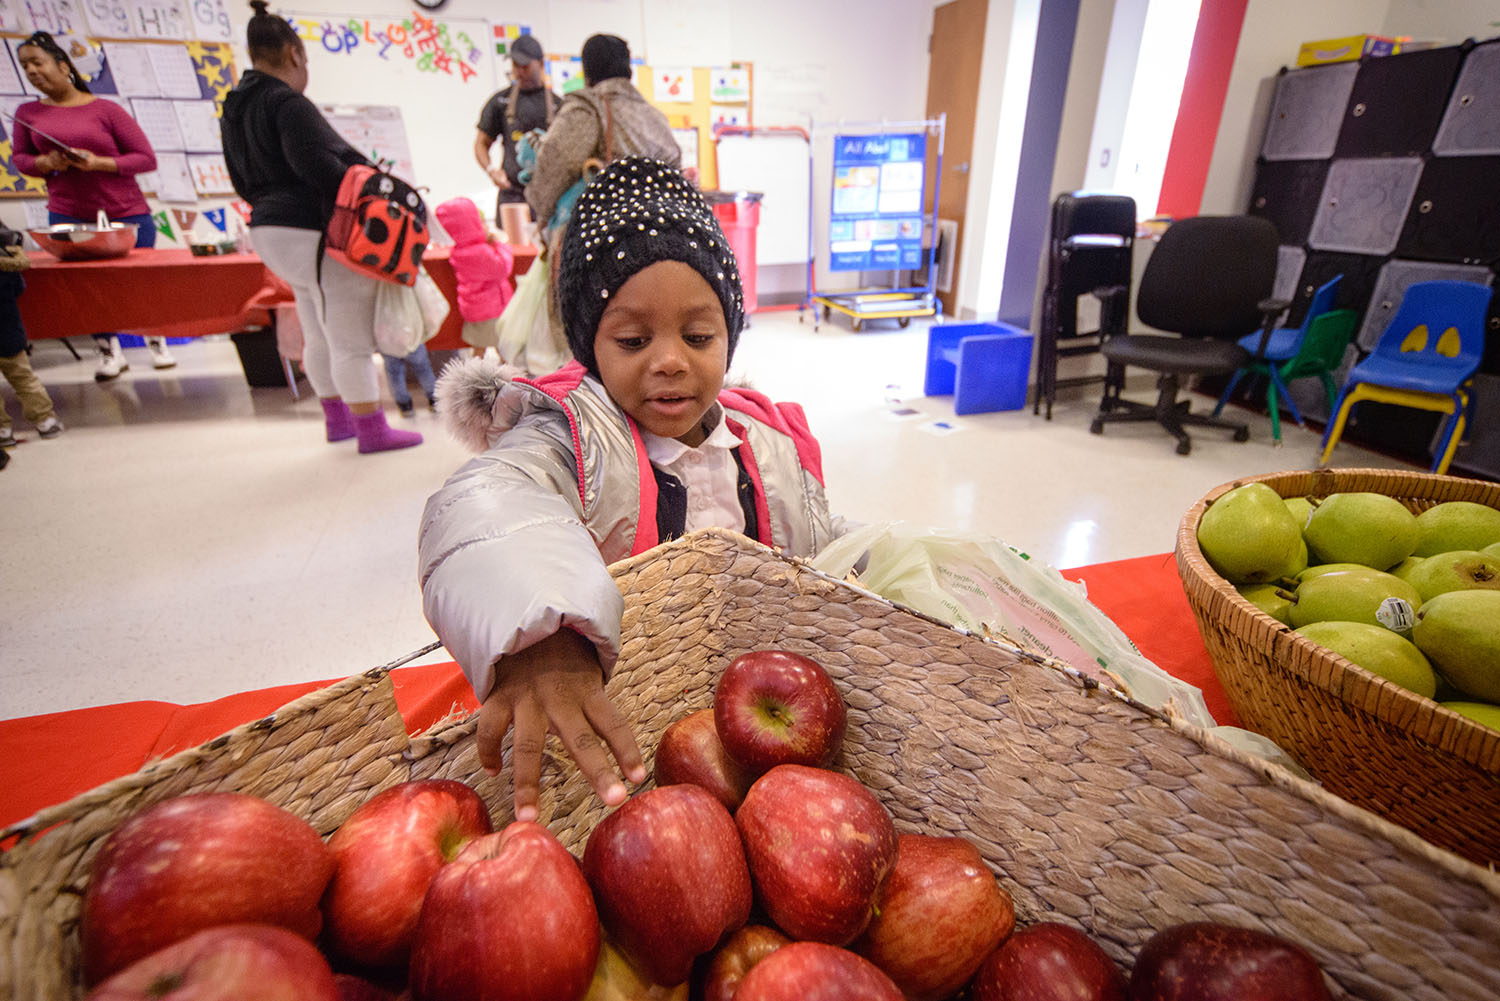 A little girl reaches for an apple.